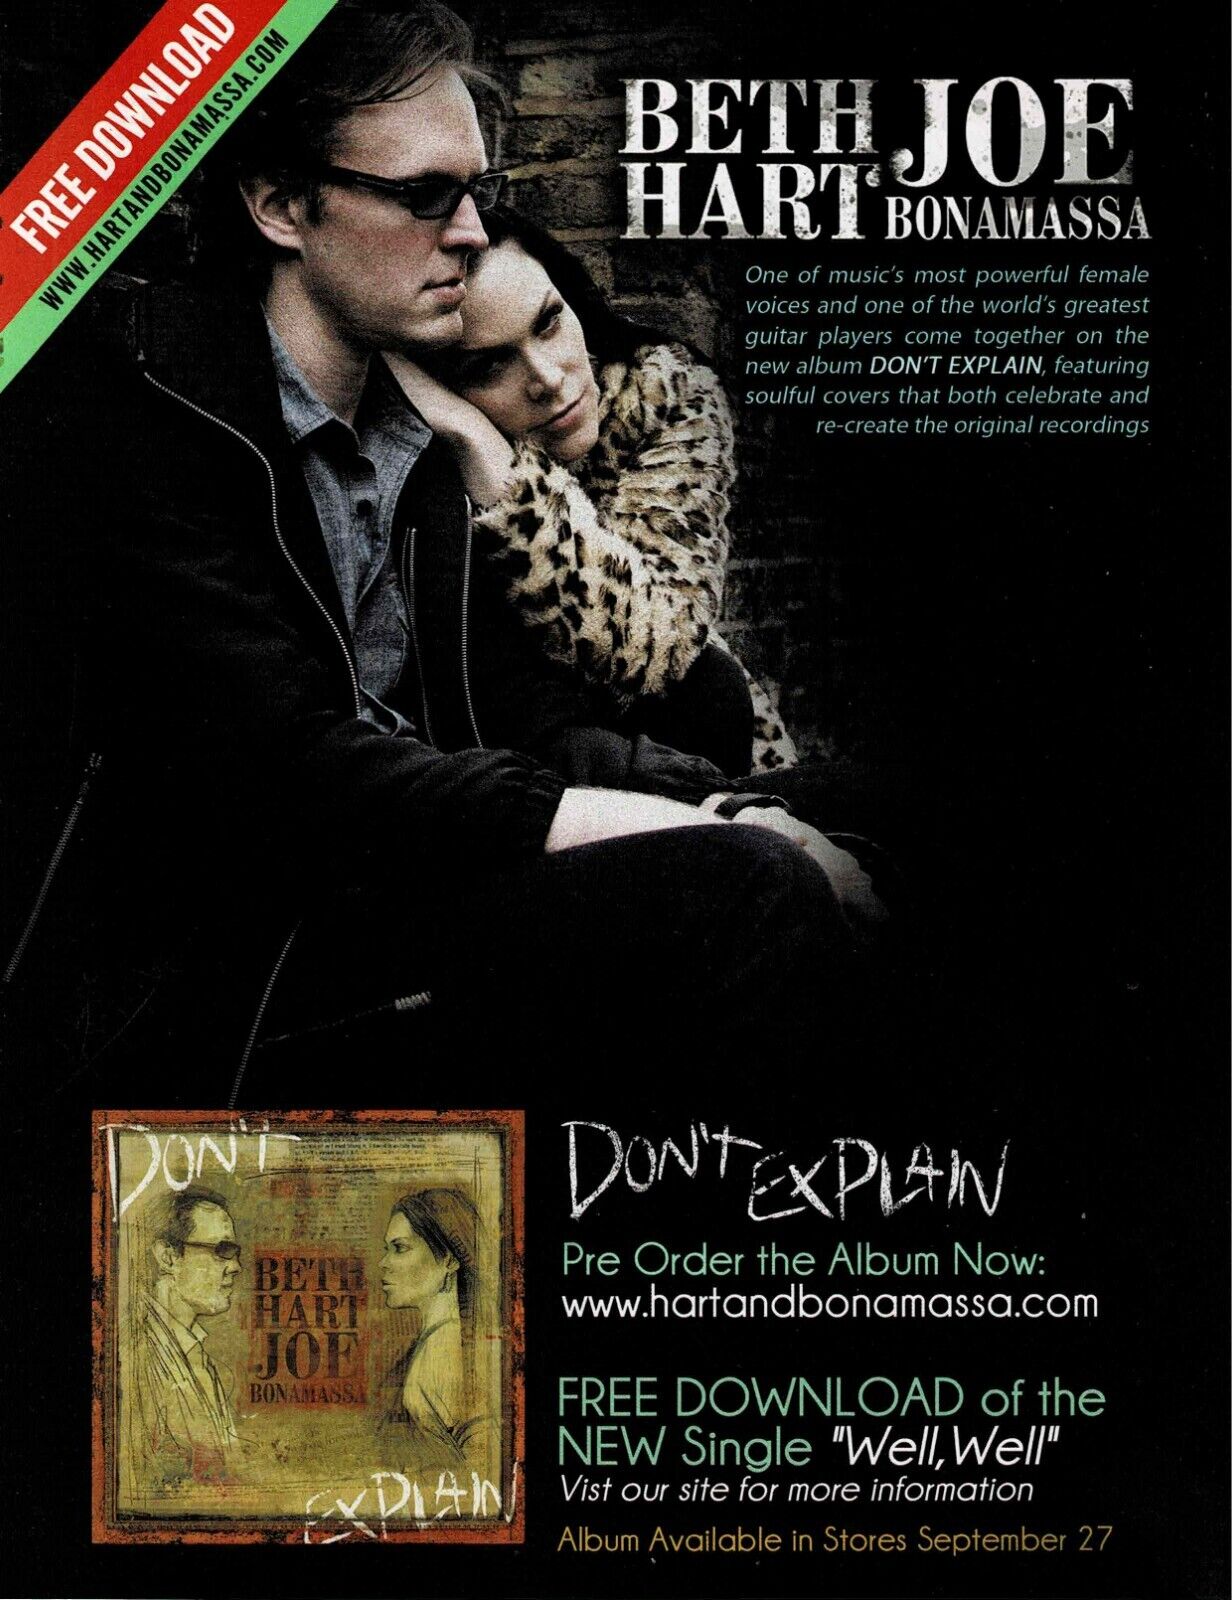 BETH HART & JOE BONAMASSA - DON'T EXPLAIN - 2011 Promo Print Ad